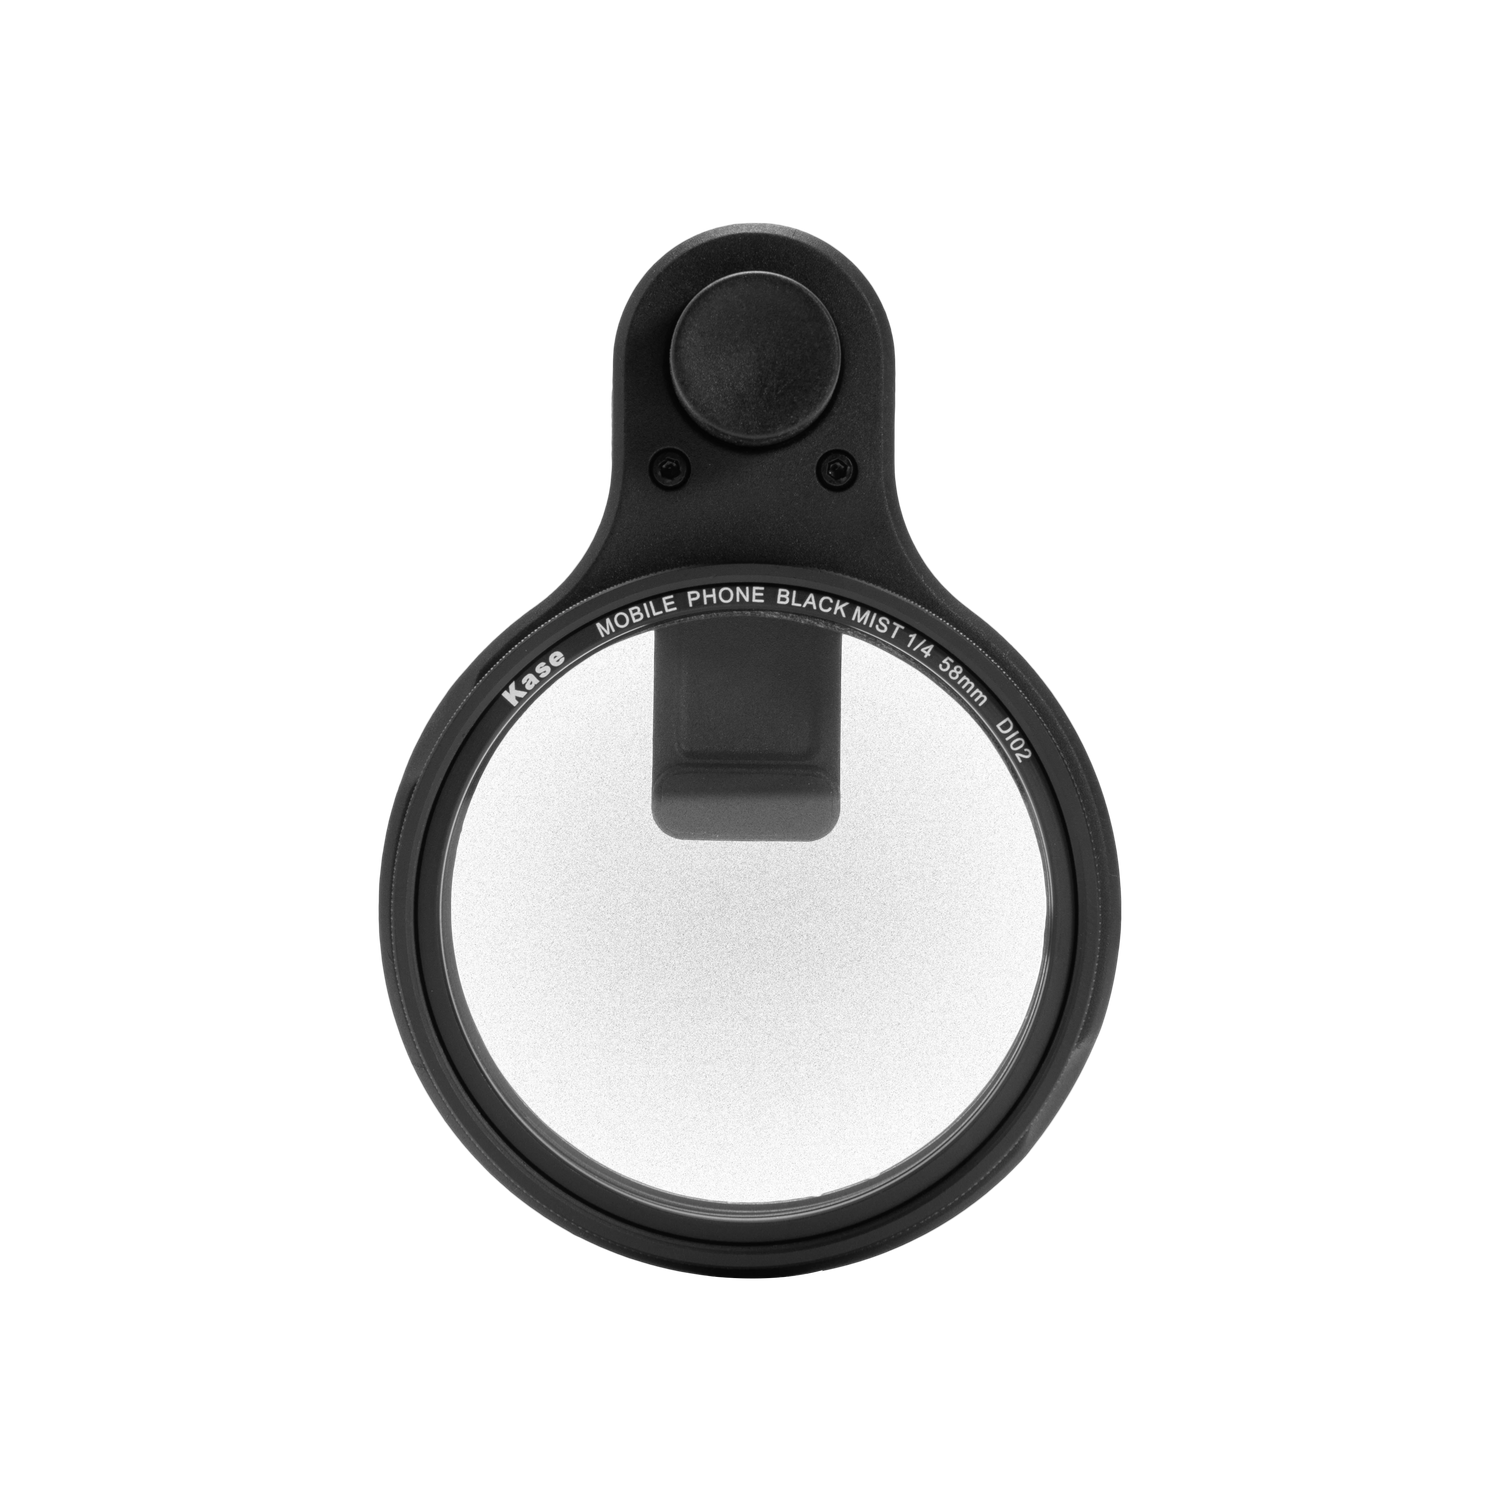 [New] Kase 58mm Black Mist 1/4 Filter for Mobile Phone